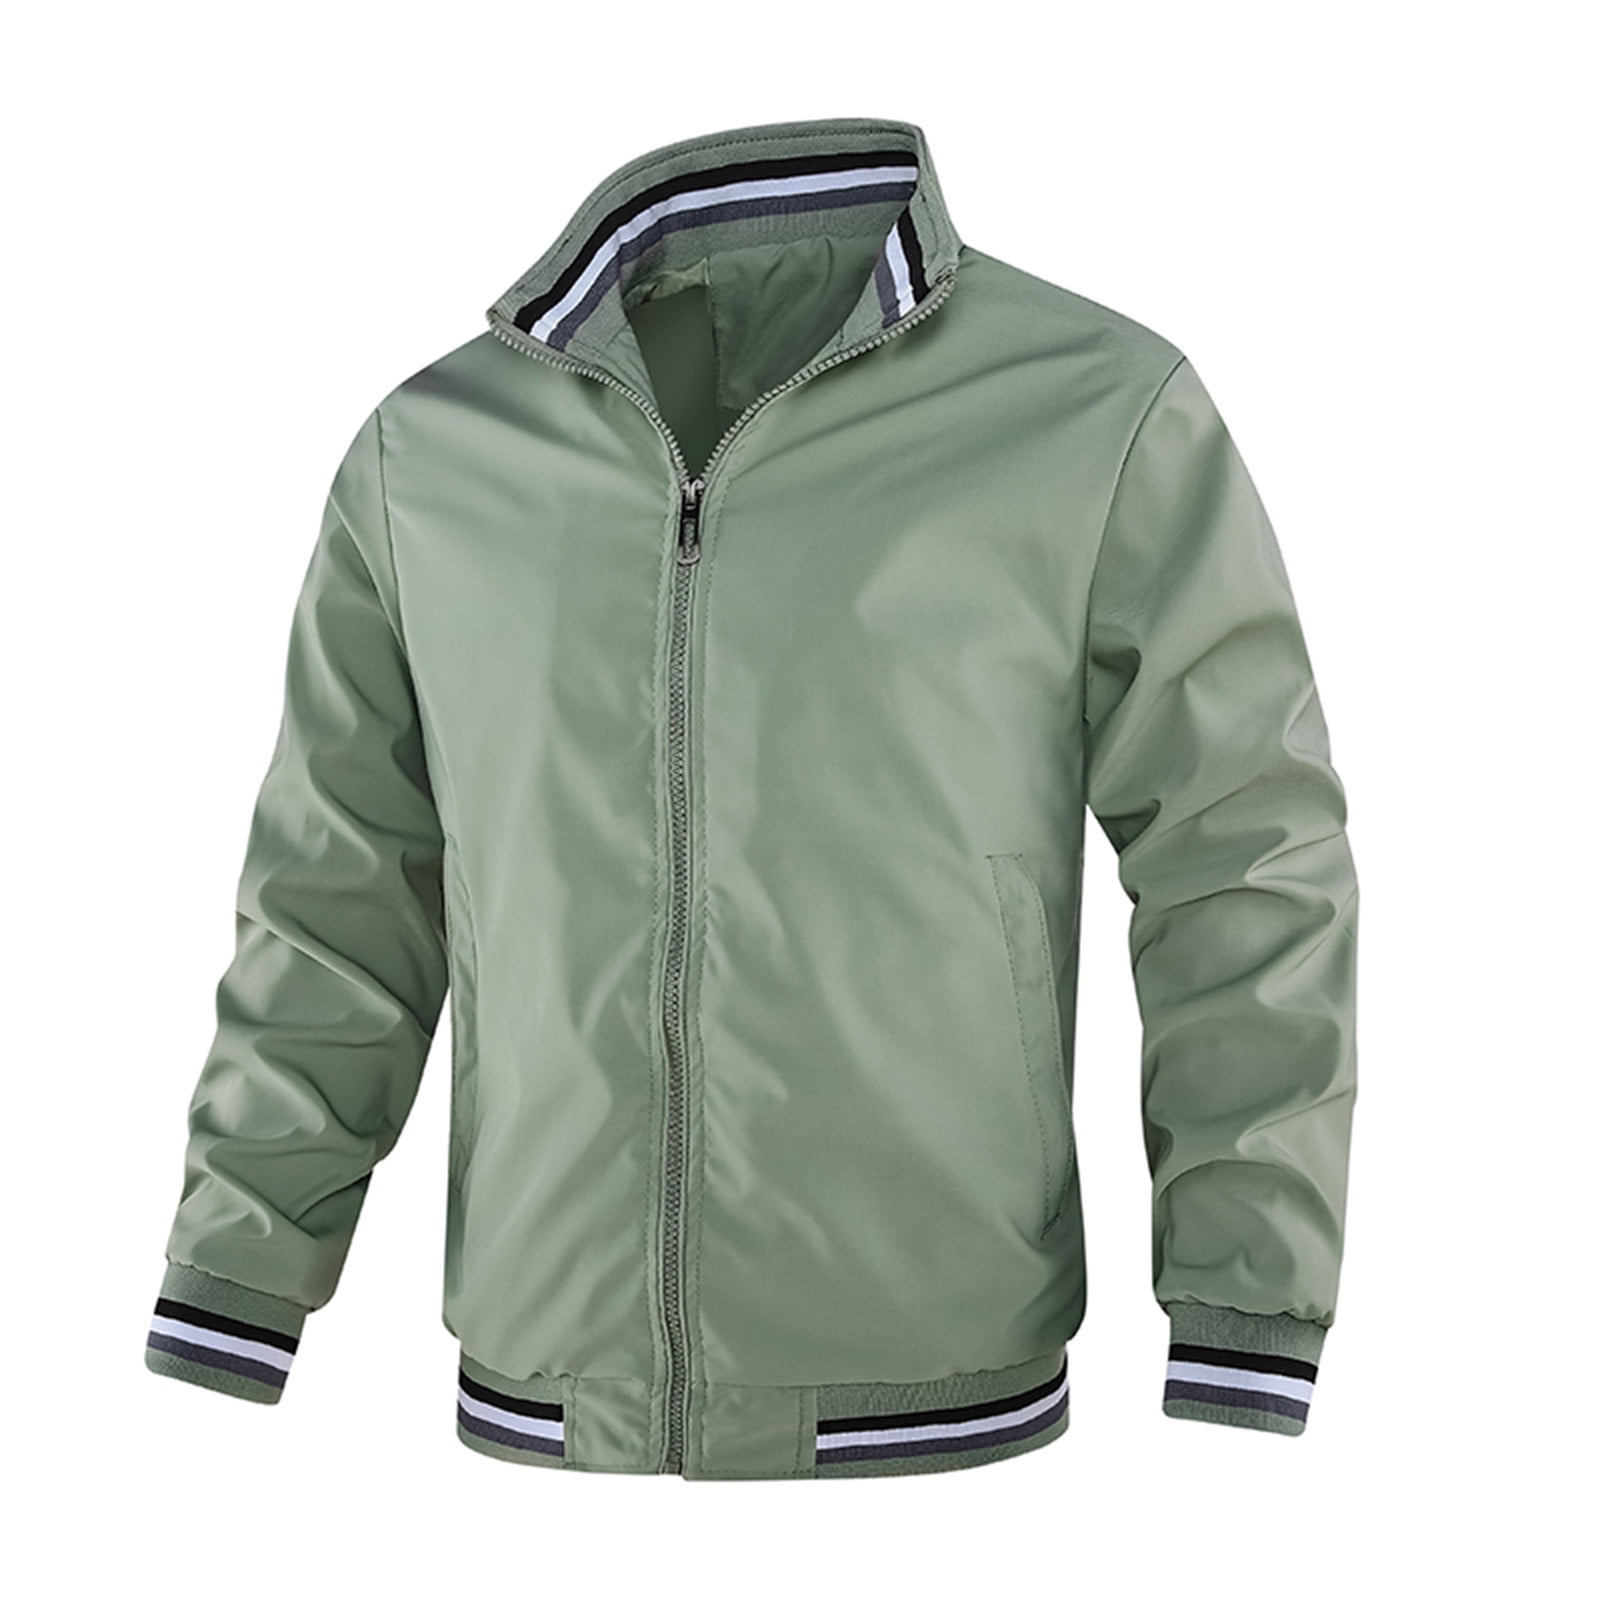 Winter Green Jackets For Men Men'S Casual Jacket Zip Up Lightweight ...